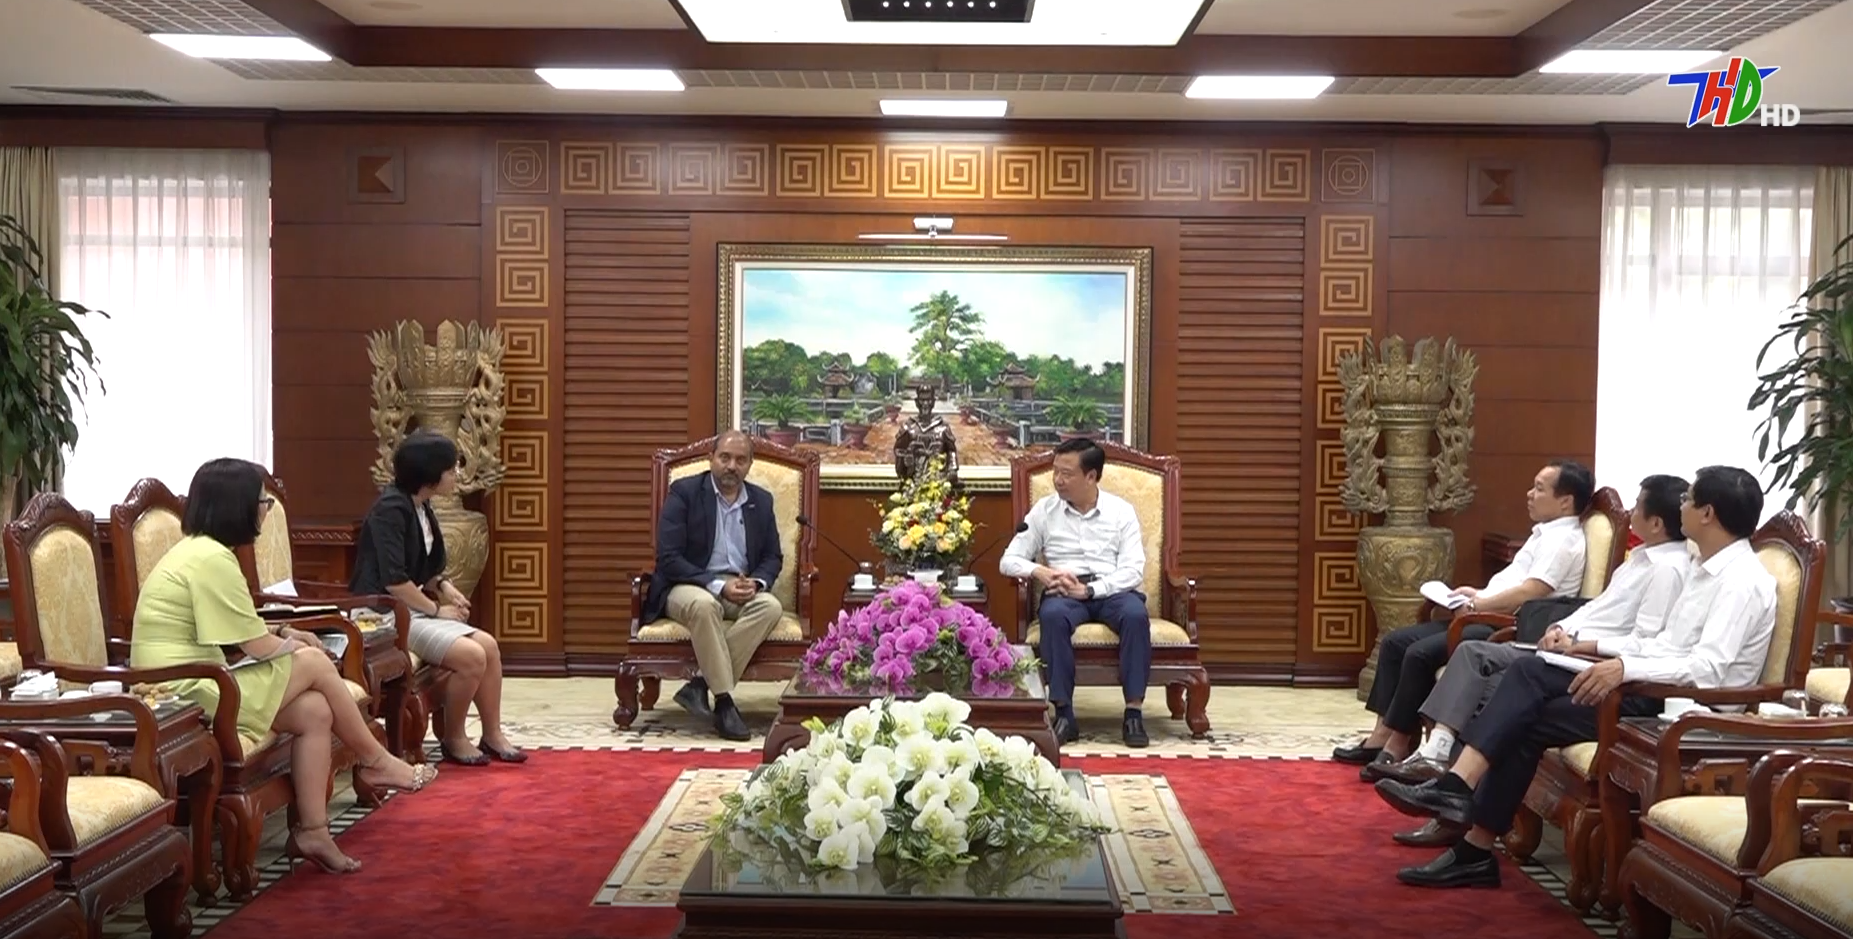 VIDEO: Bí thư Tỉnh uỷ tiếp và làm việc với Tổng giáo đốc Công ty Ford Việt Nam